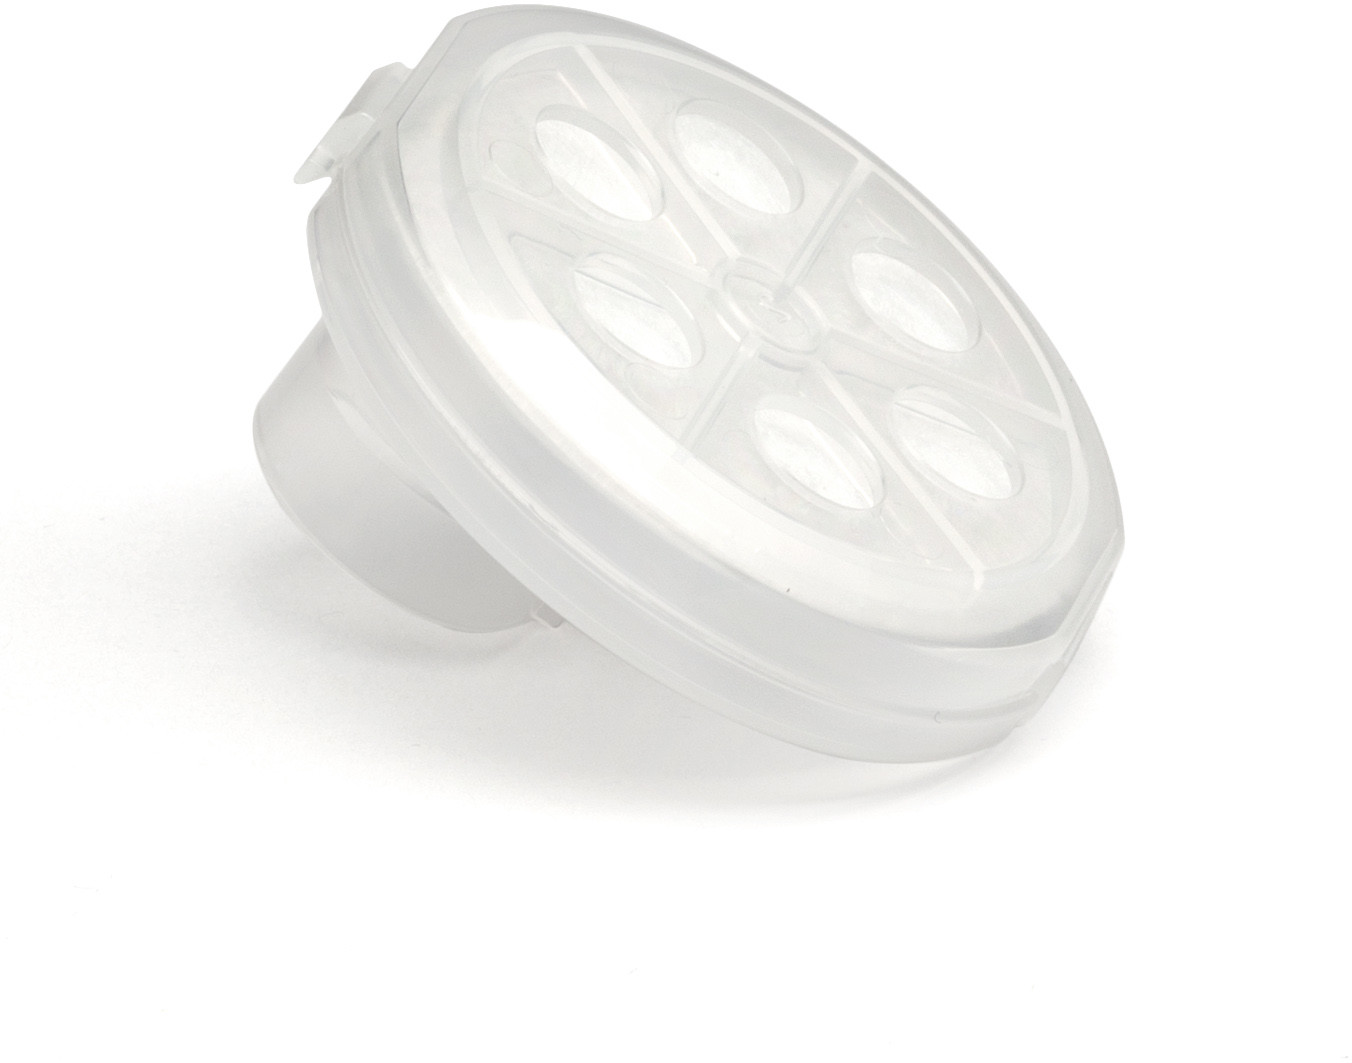 Medel filtr przeciwzakażeniowy do nebulizatora Jet Pro 2012 filtr przeciwzakażeniowy do inhalatora Maxi i Pro